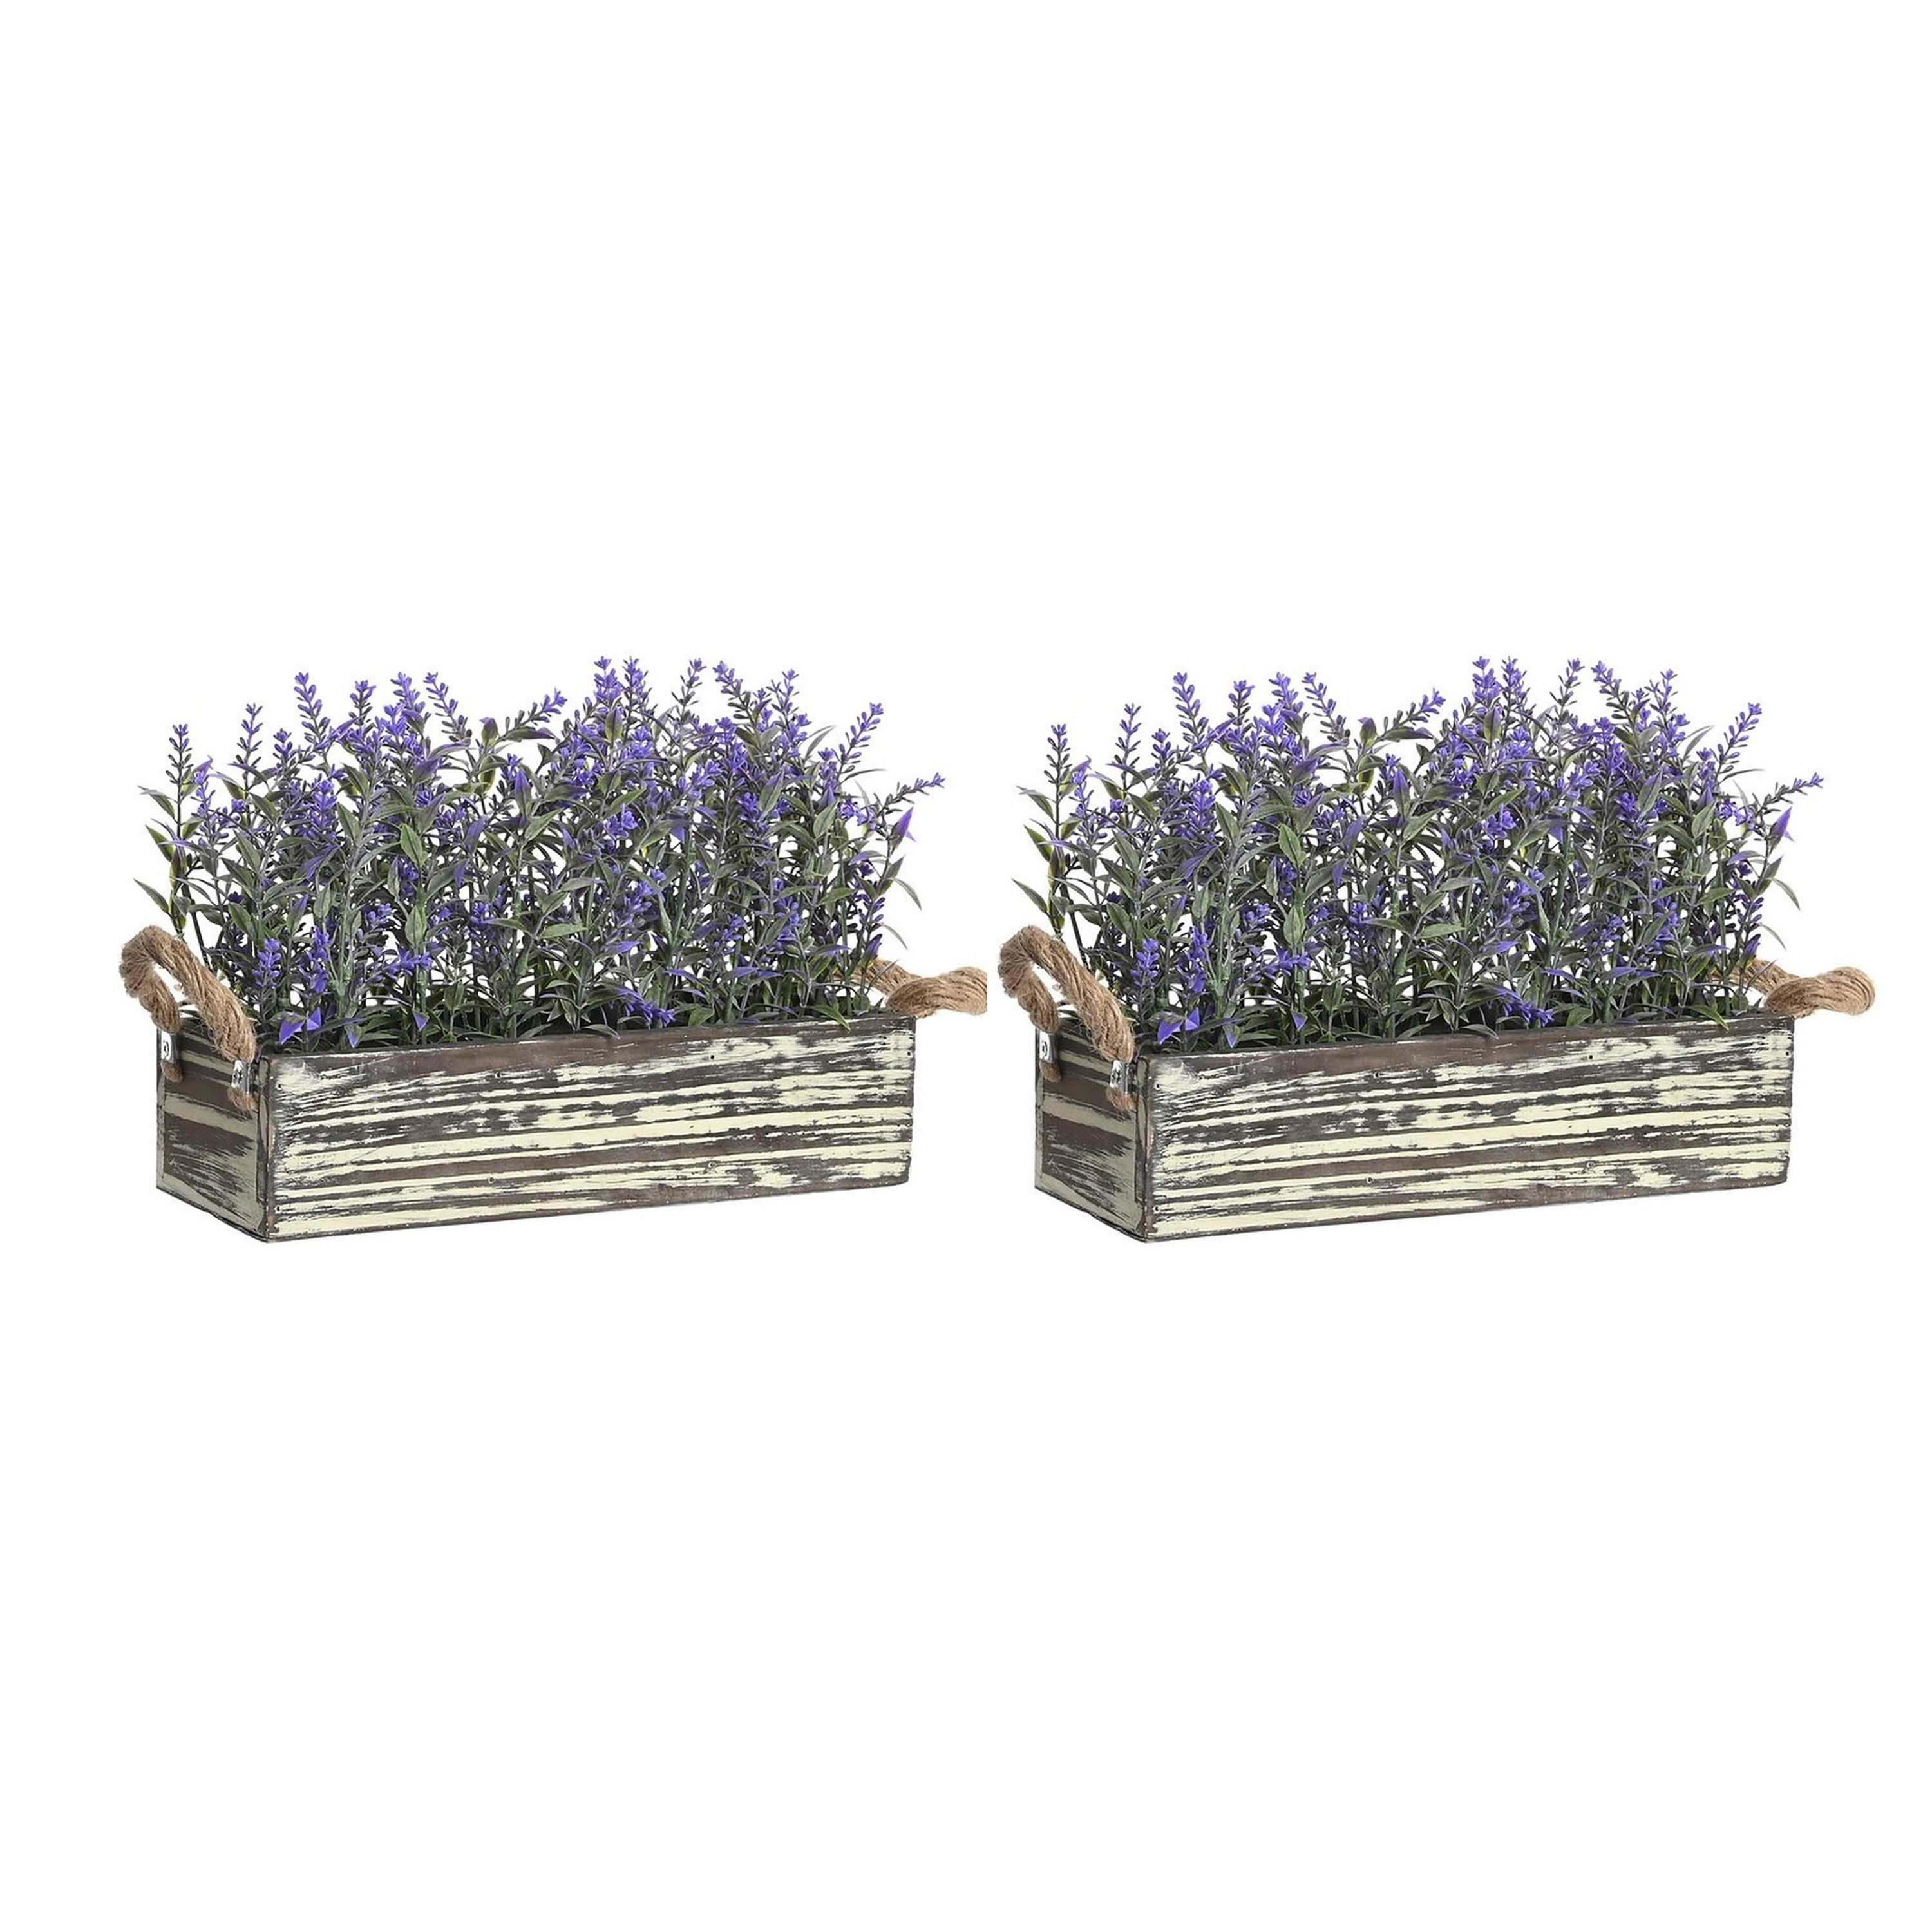 Lavendel bloemen kunstplant in houten bloempot - 2x - donkerpaarse bloemen - 30 x 12 x 21 cm -